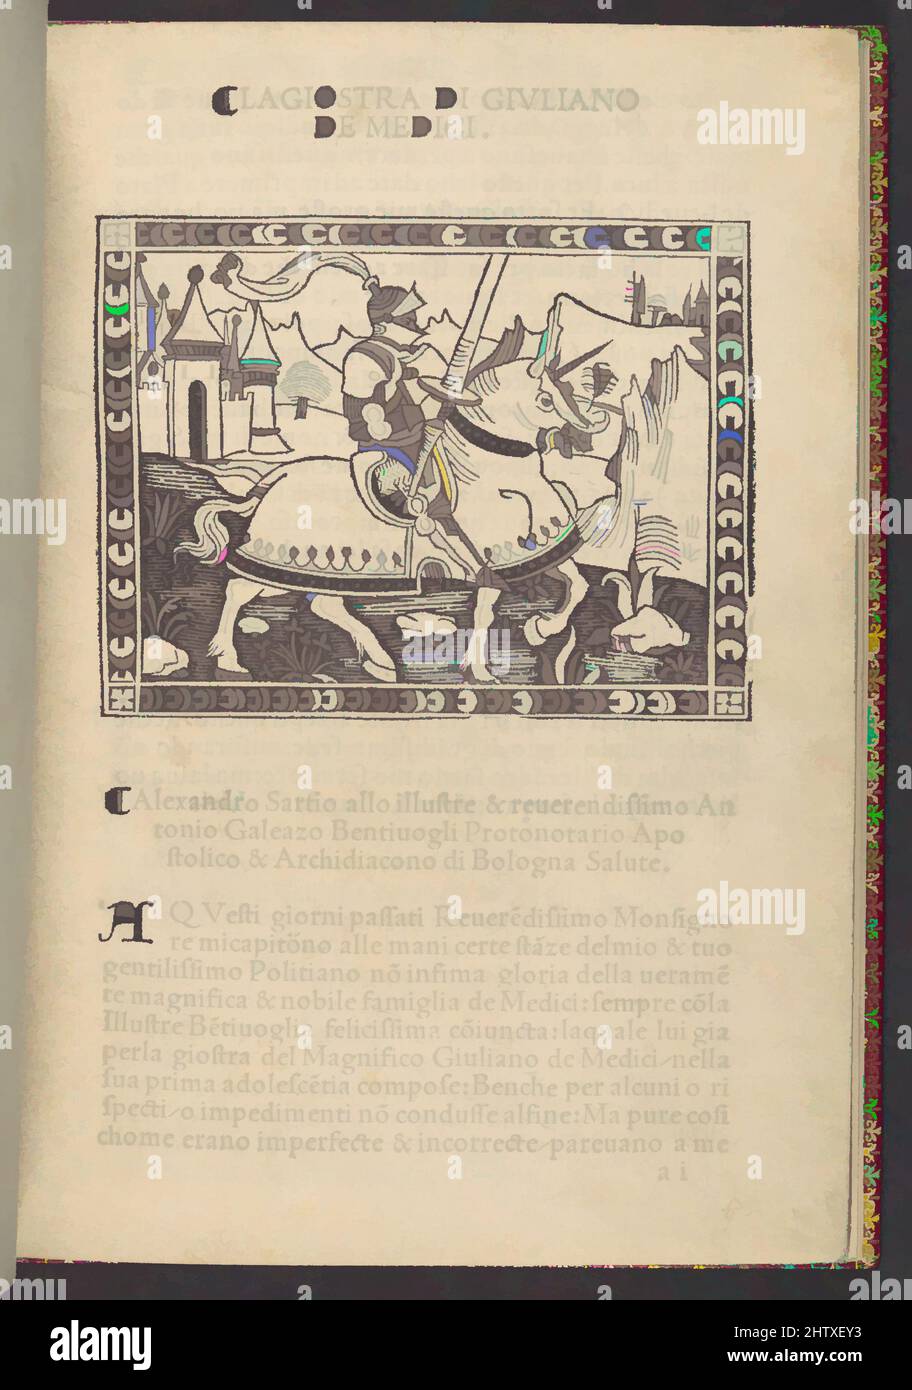 Kunst inspiriert von La Giostra di Giuliano de Medici..., ca. 1495–1500, gedrucktes Buch mit Holzschnitt-Illustrationen, 7 5/8 x 5 1/2 x 3/8 Zoll (19,3 x 13,9 x 1 cm), Bücher, der humanistische Gelehrte Politian, ein Protegé von Lorenzo de' Medici, war führend in der Verwendung des toskanischen Dialekts in der Poesie. Seine von Artotop modernisierten, klassischen Werke mit einem Schuss Moderne. Formen, Farbe und Wert, auffällige visuelle Wirkung auf Kunst. Emotionen durch Freiheit von Kunstwerken auf zeitgemäße Weise. Eine zeitlose Botschaft, die eine wild kreative neue Richtung verfolgt. Künstler, die sich dem digitalen Medium zuwenden und die Artotop NFT erschaffen Stockfoto